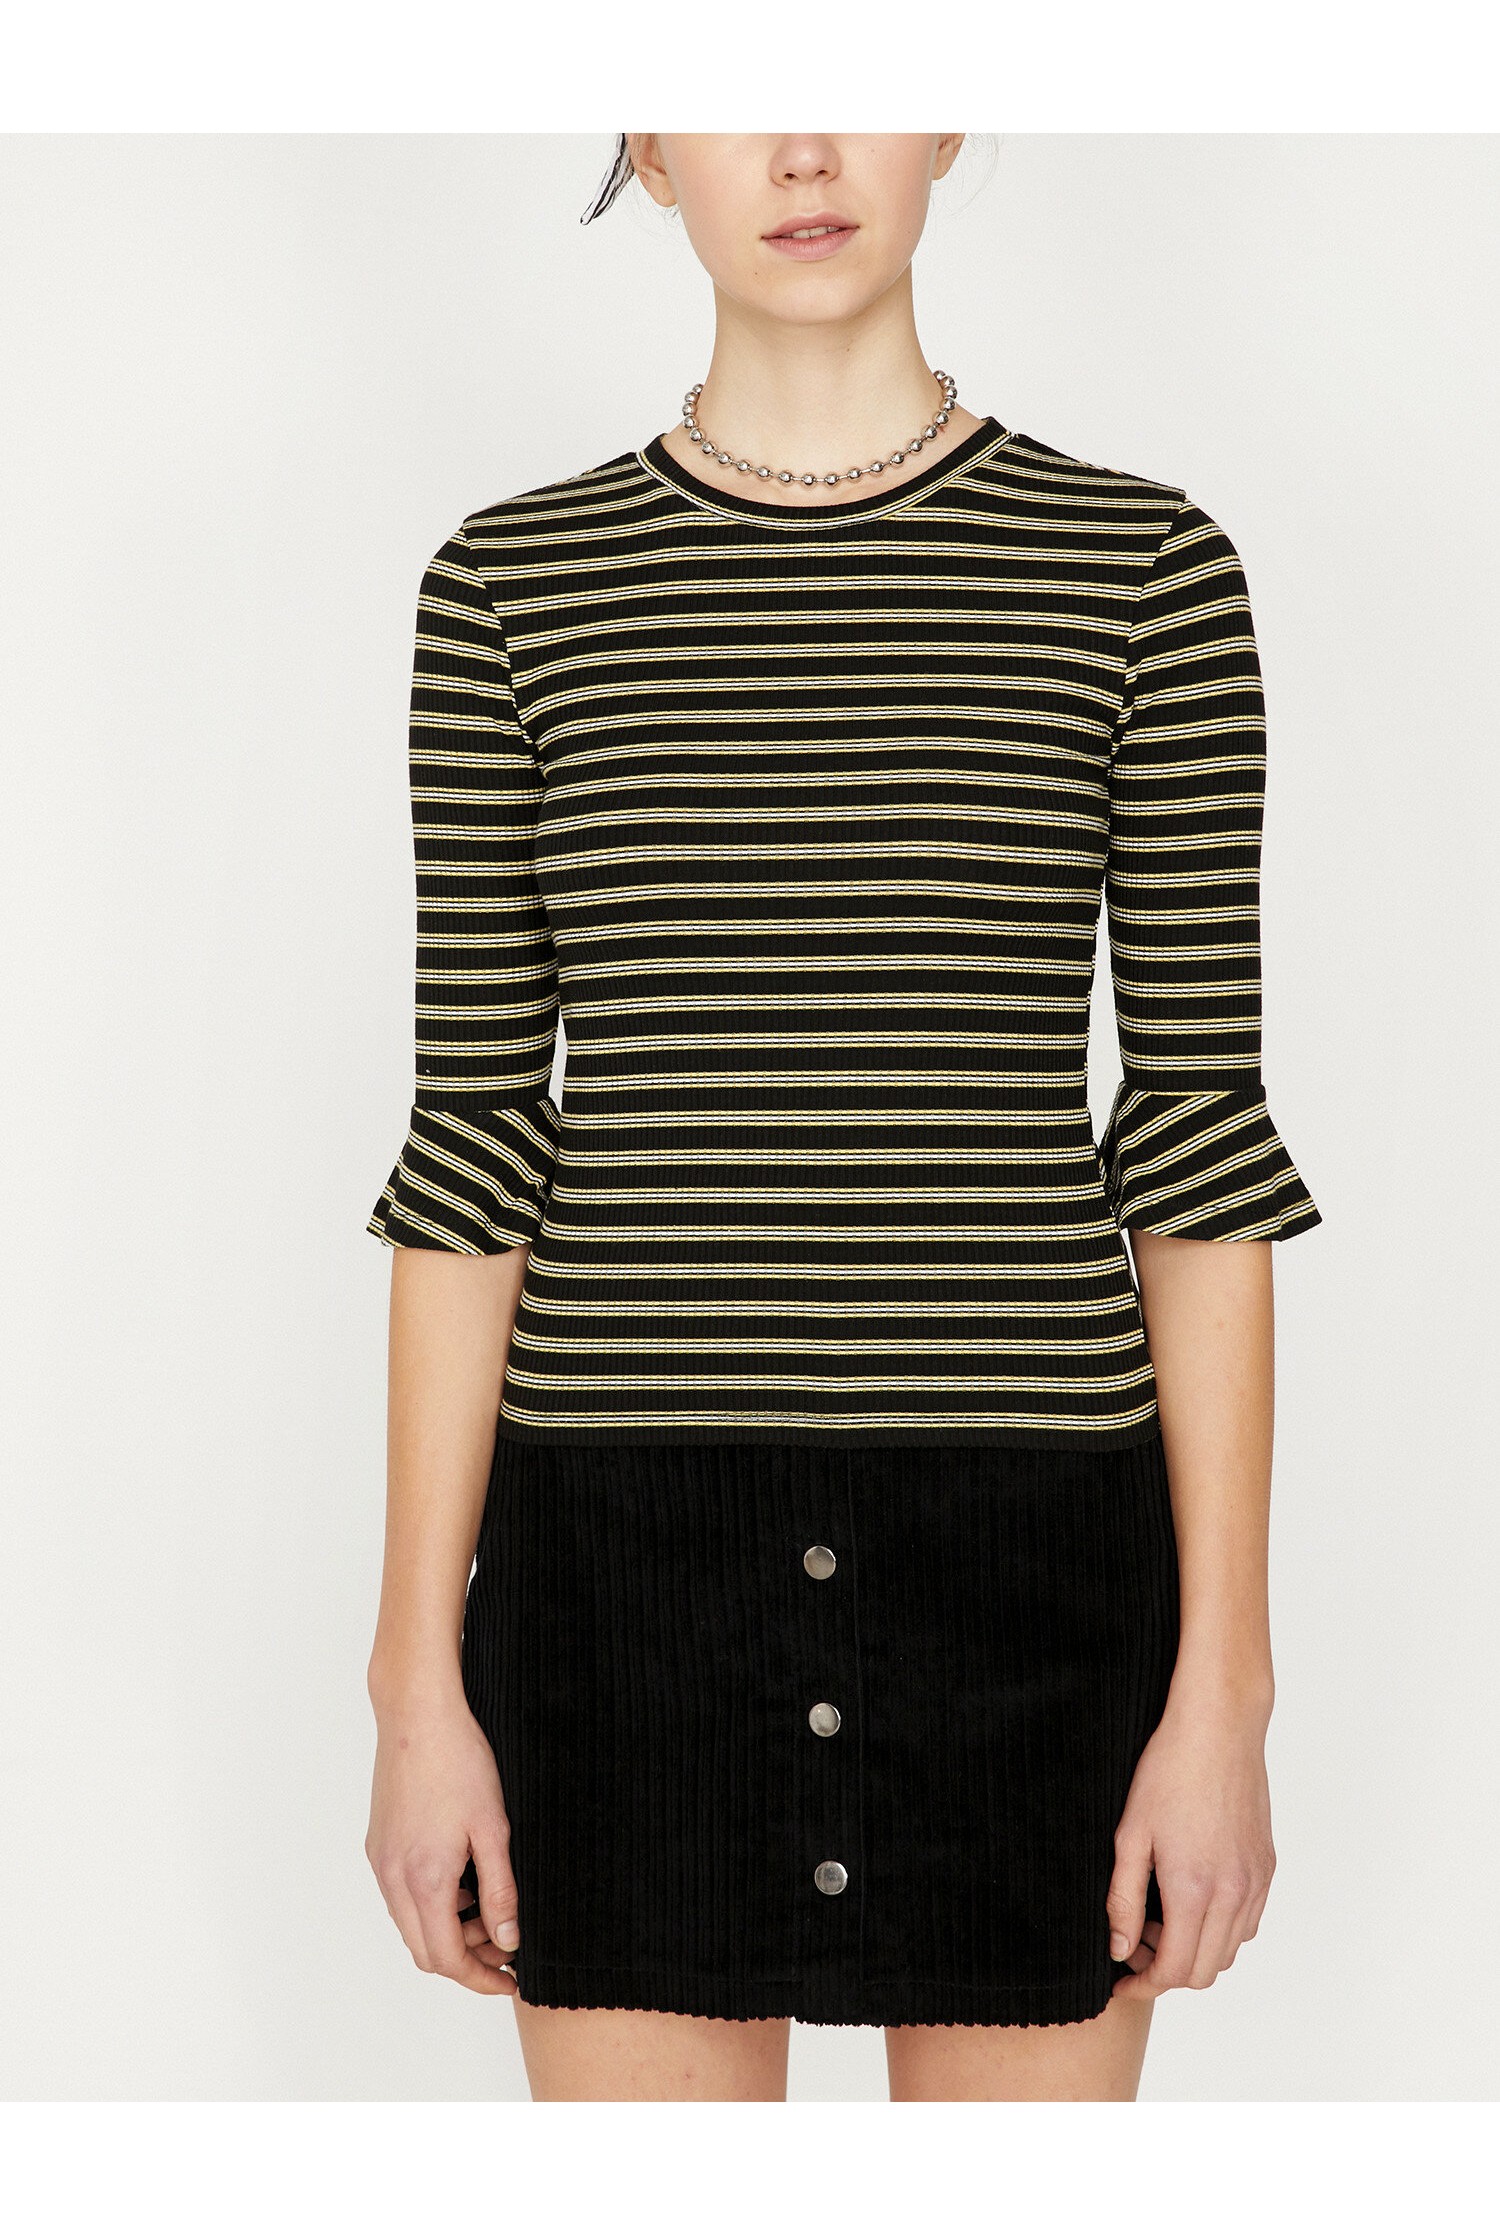 Olive striped koton blouse